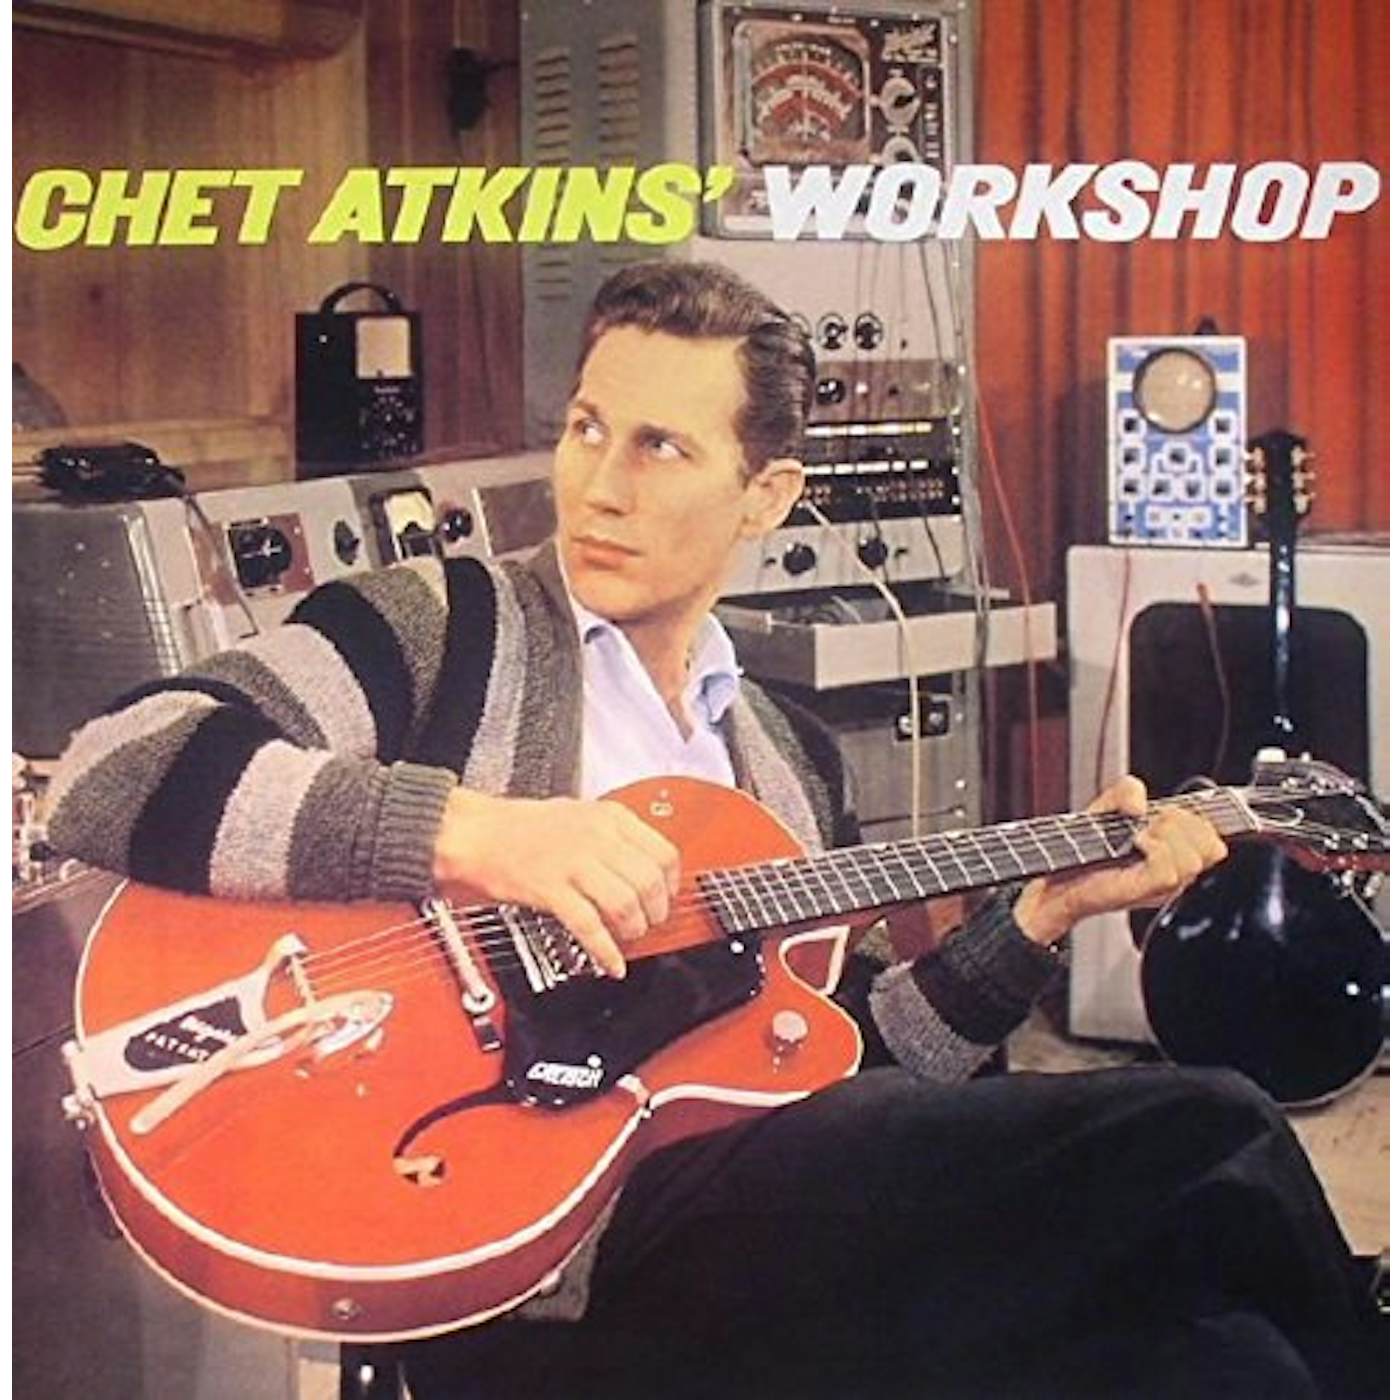 Chet Atkins WORKSHOP Vinyl Record